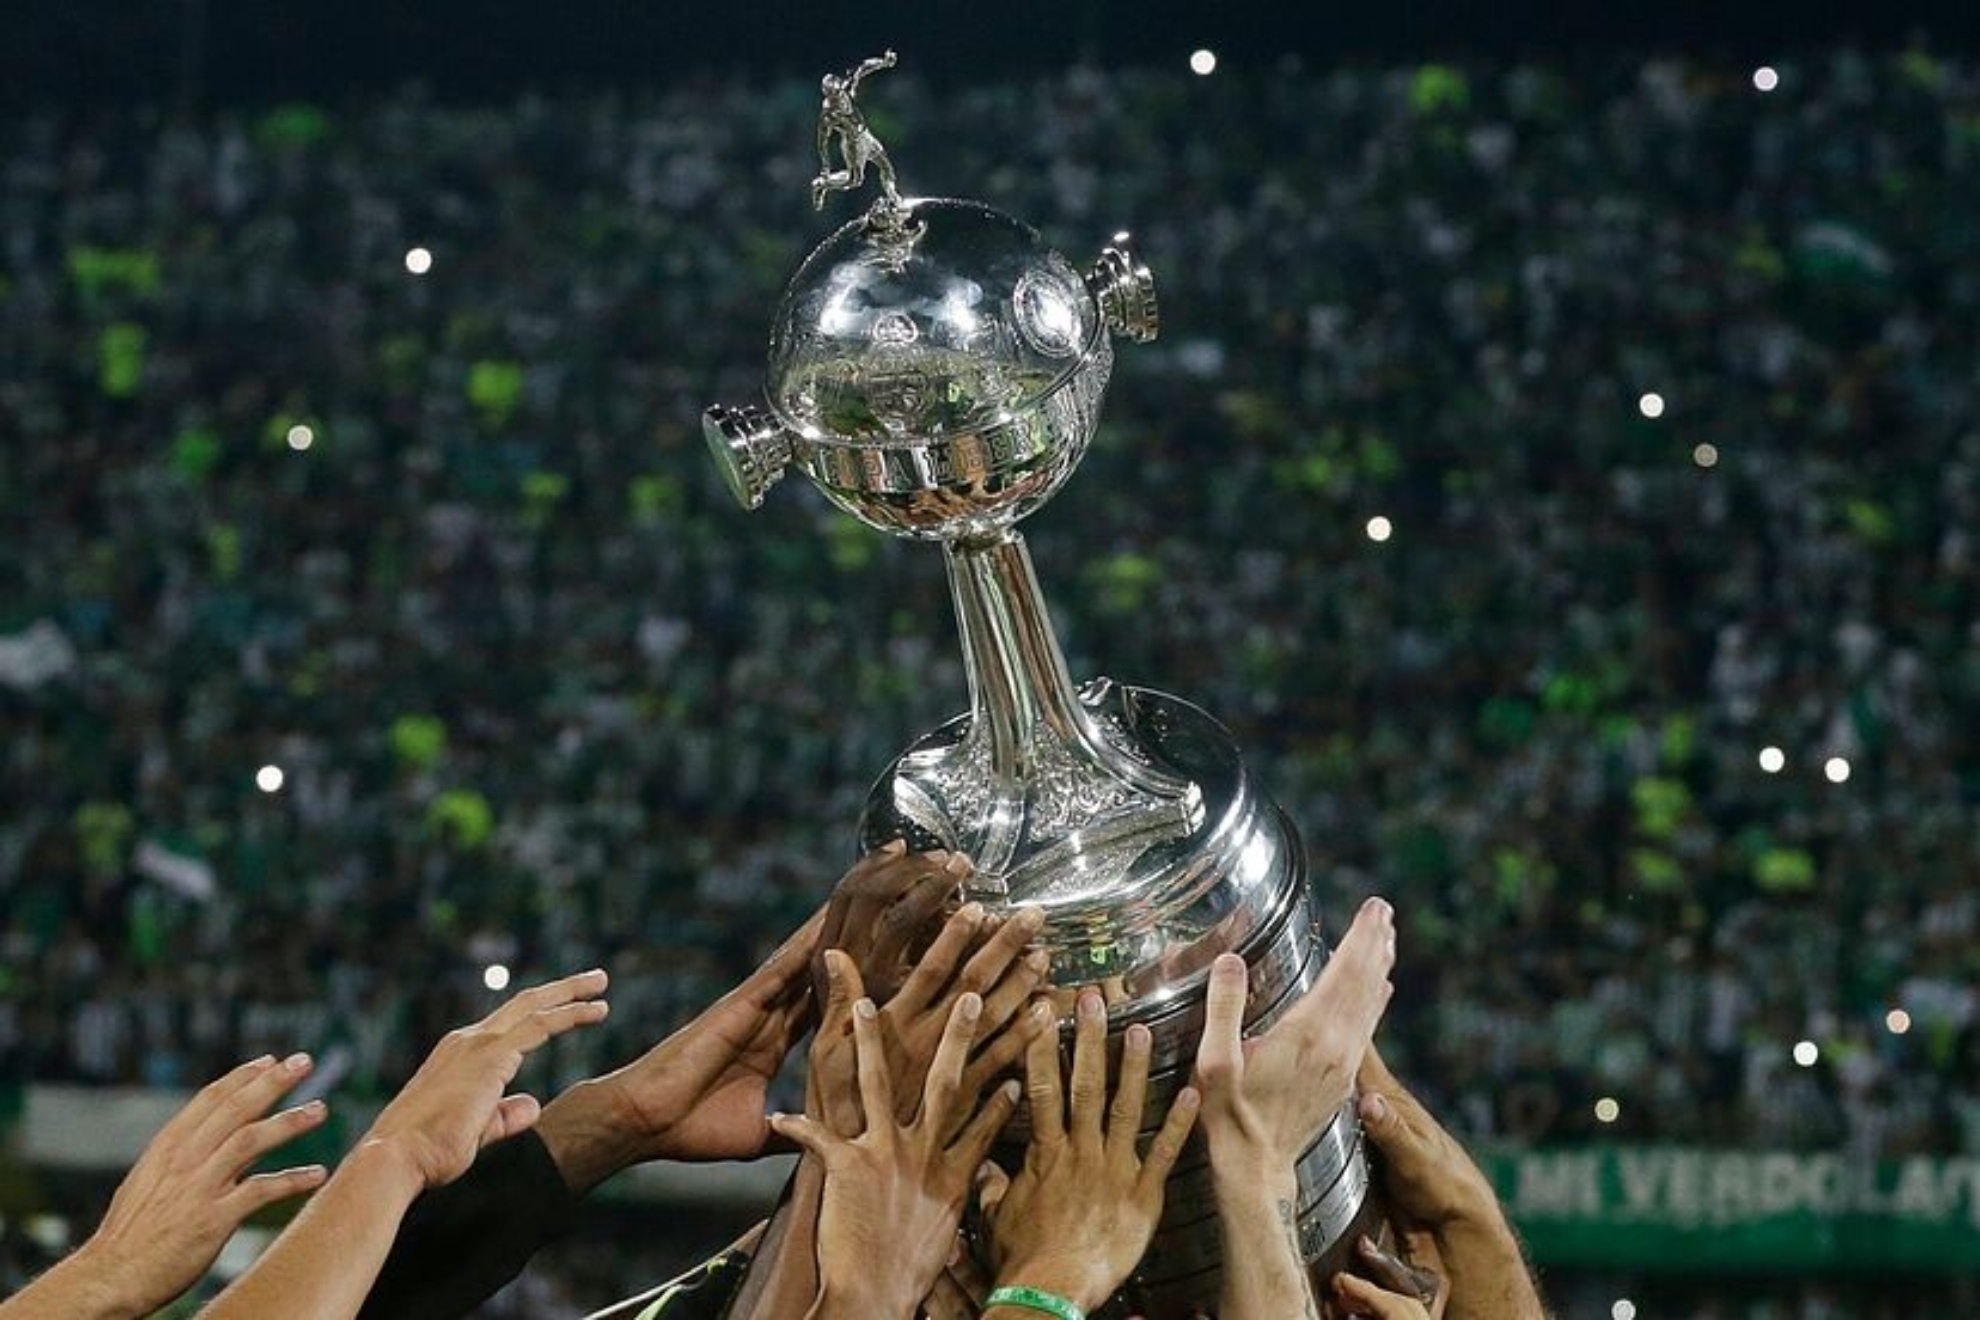 Final Copa Libertadores 2023: equipos clasificados, estadio, entradas y dónde se juega